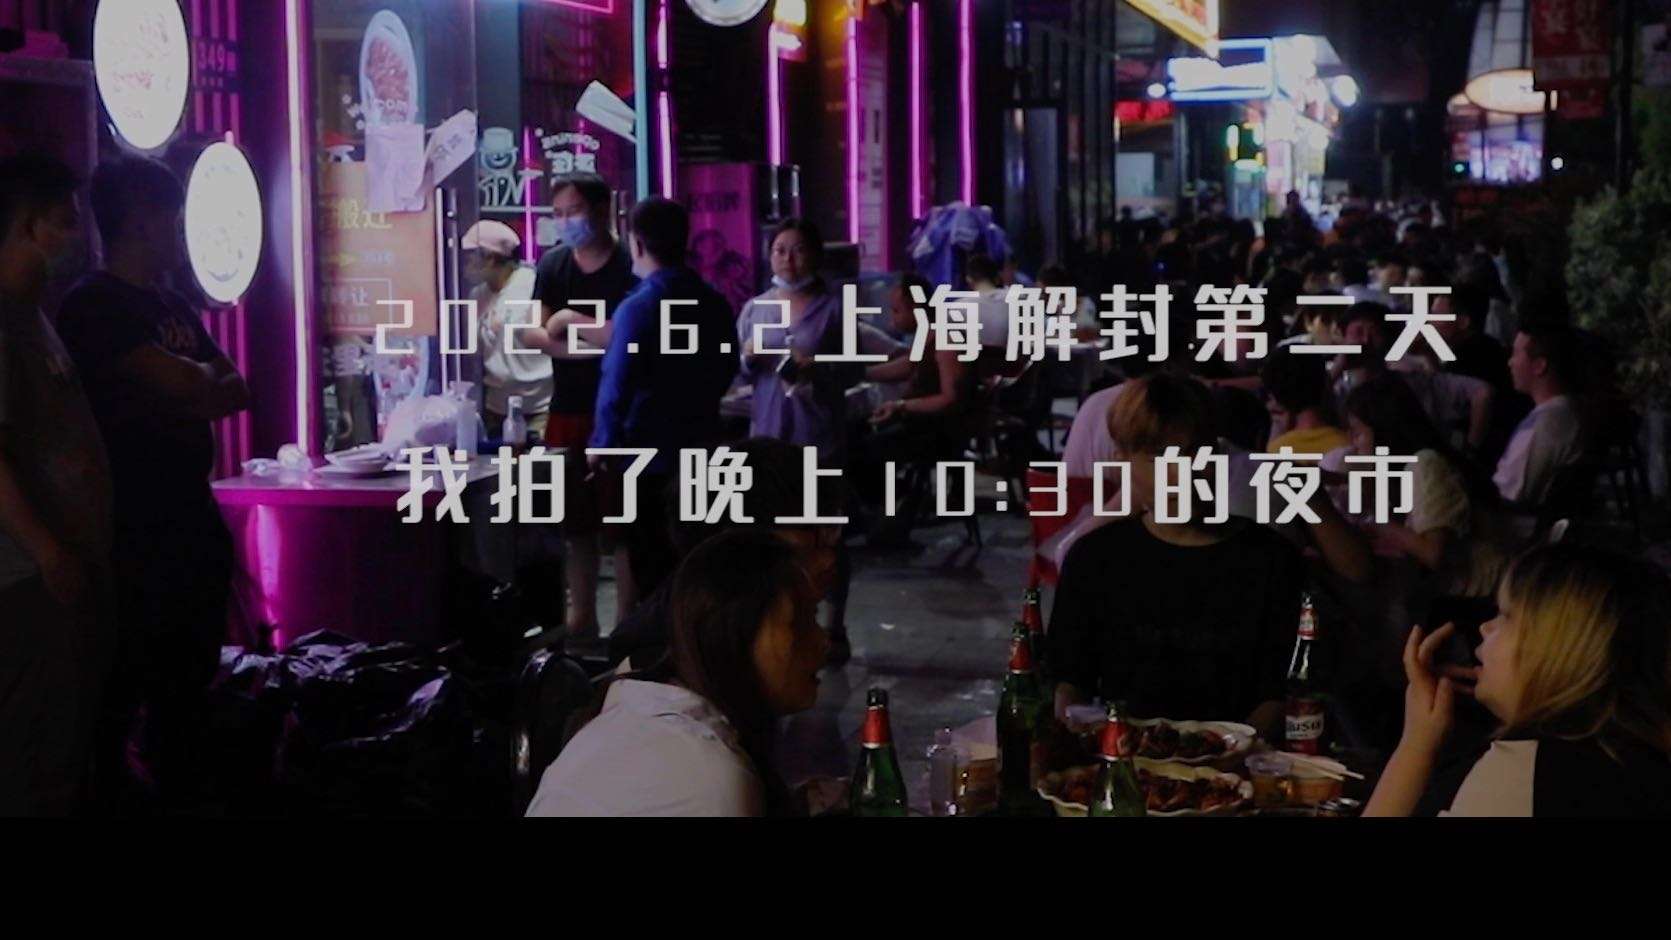 2022.6.2上海解封第二天我拍了晚上10:30的夜市